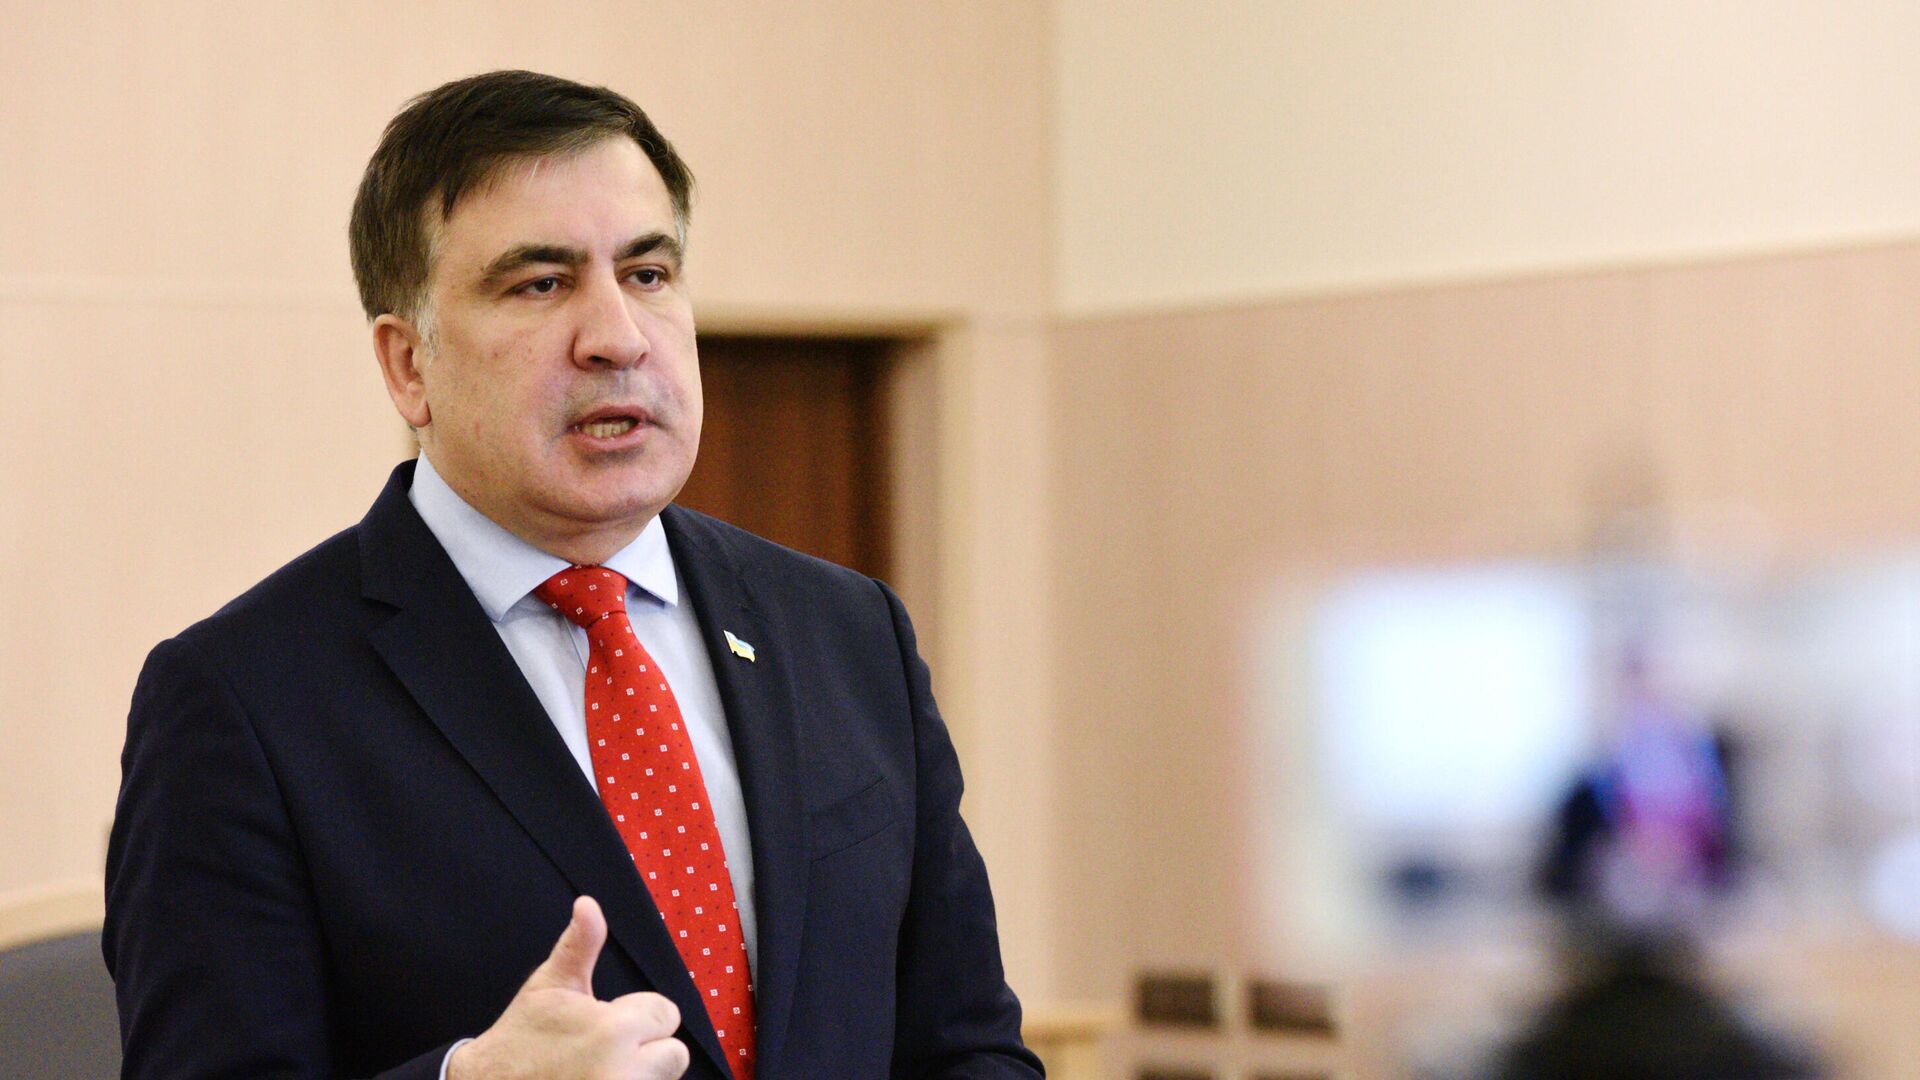 Экс-президент Грузии, бывший губернатор Одесской области Михаил Саакашвили  - Sputnik Азербайджан, 1920, 10.11.2021